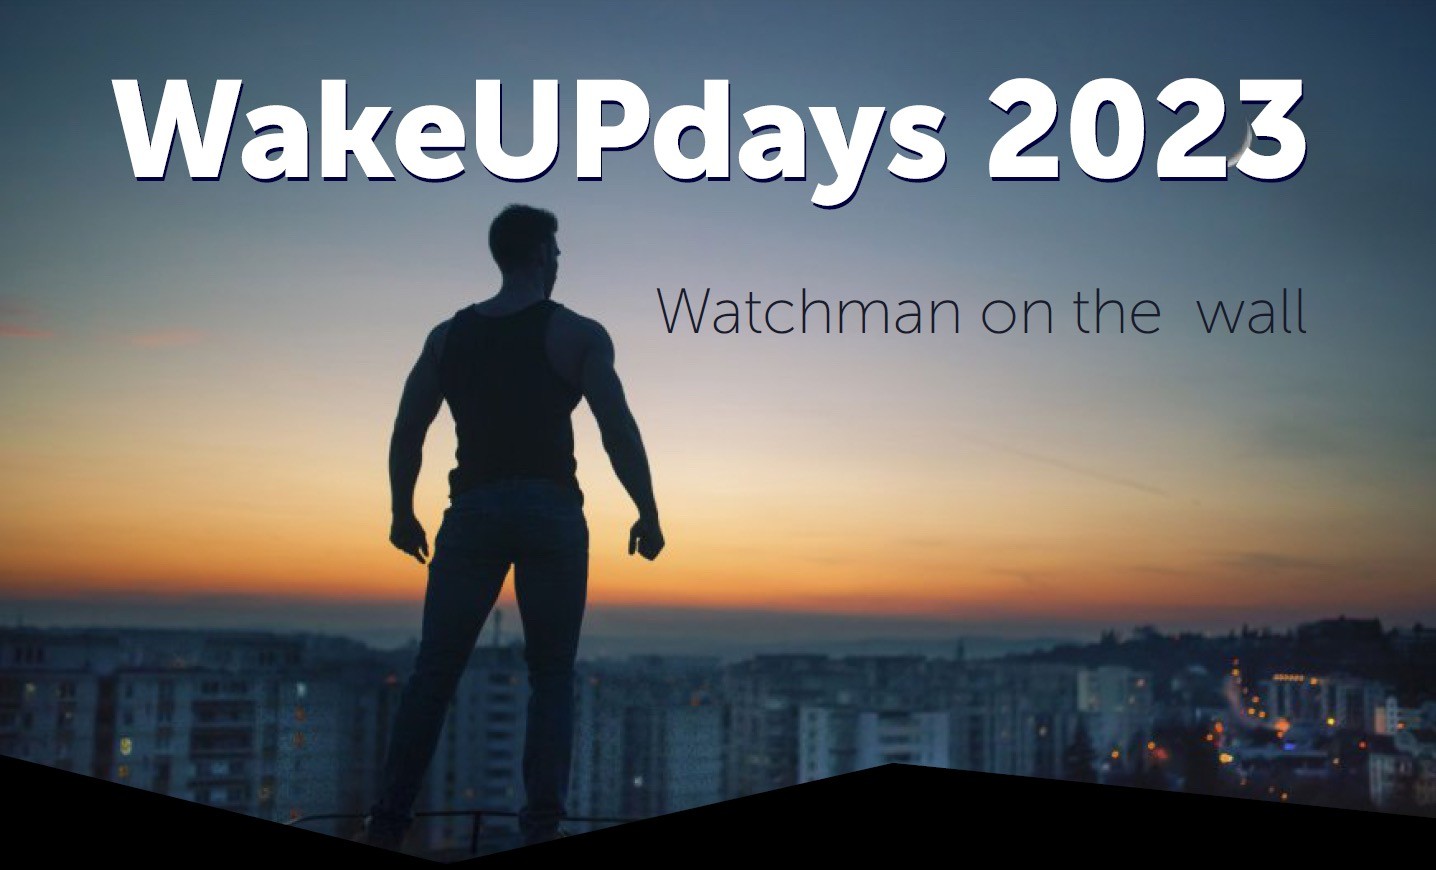 Wake Up Days 2023